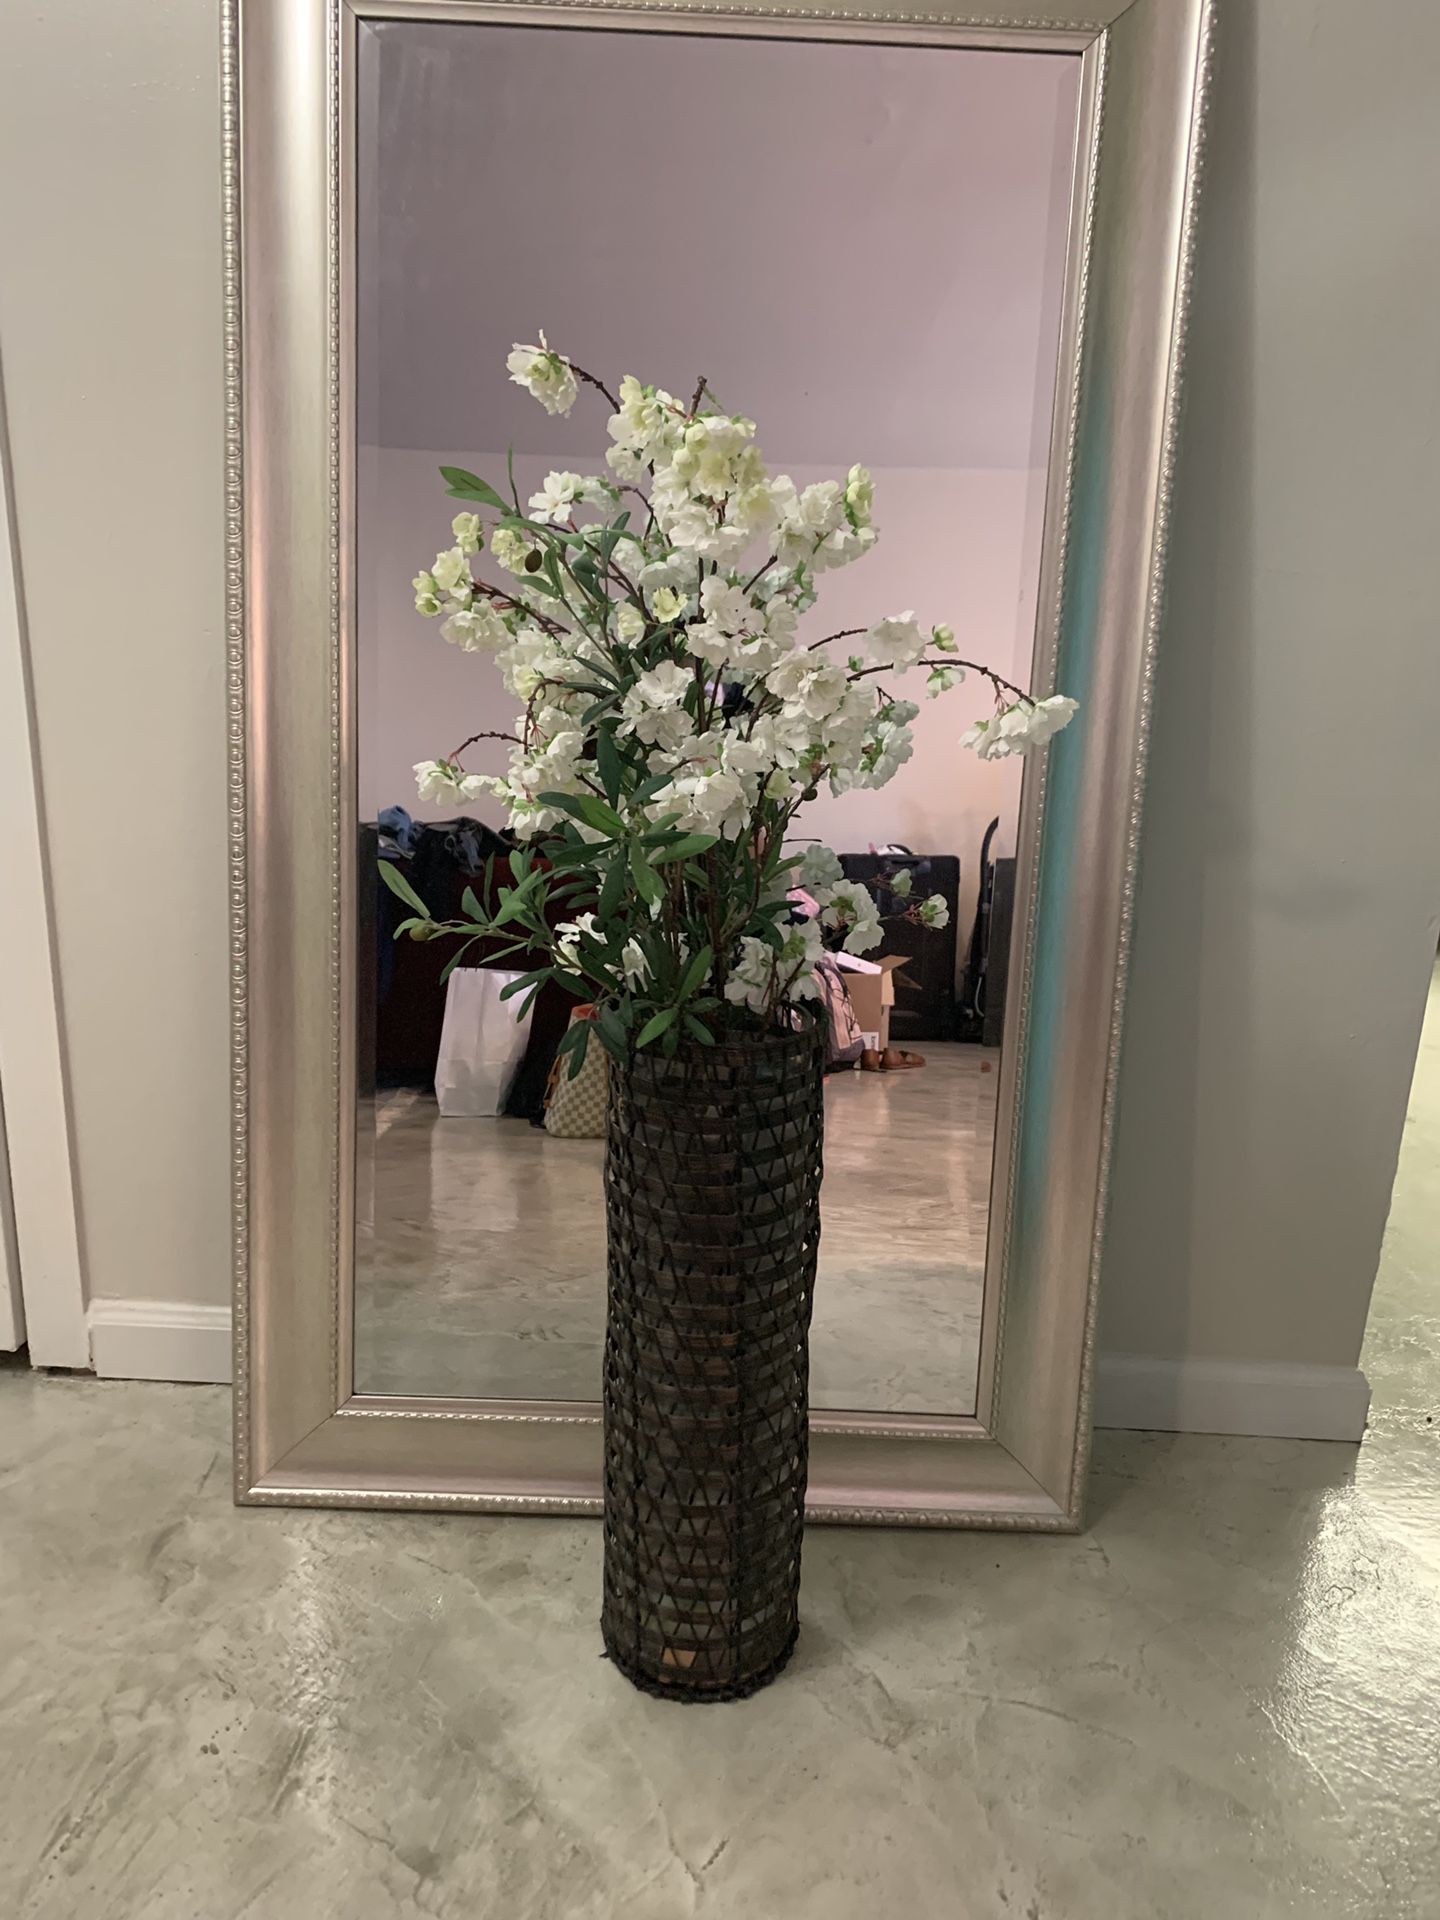 Decorative vase - fake flowers